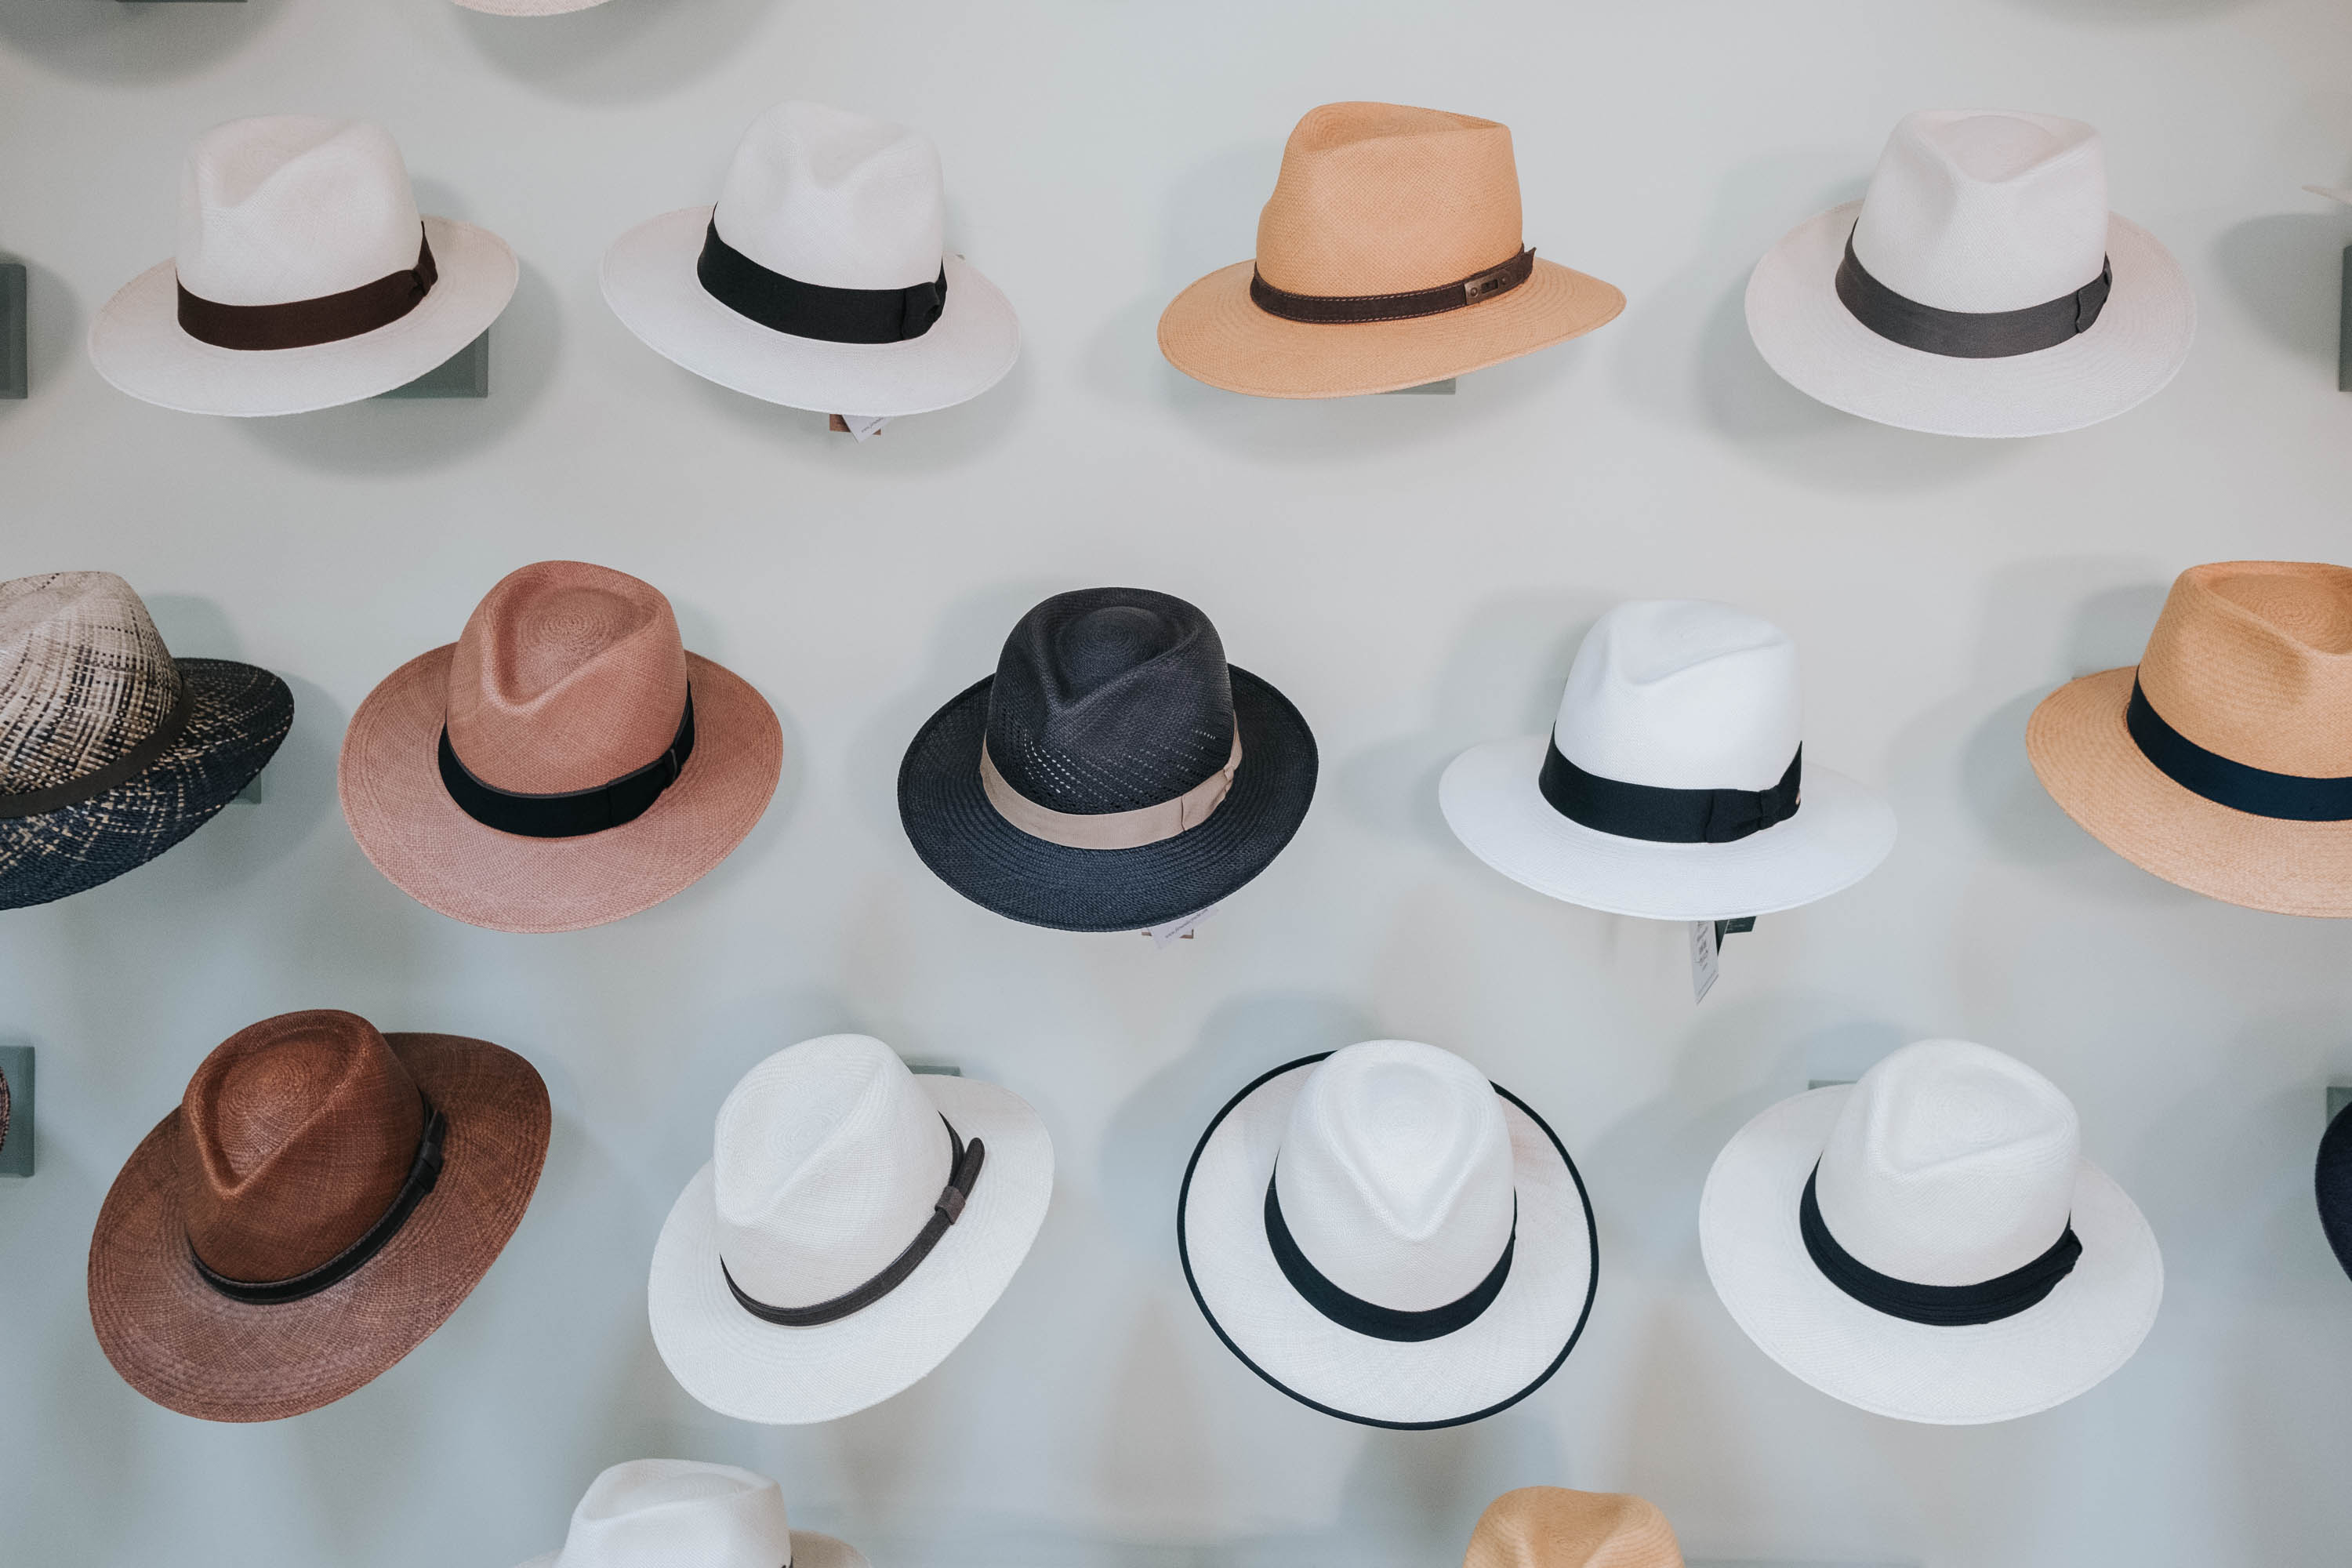 Los 5 tipos de copa de sombreros que tienes conocer #fyr